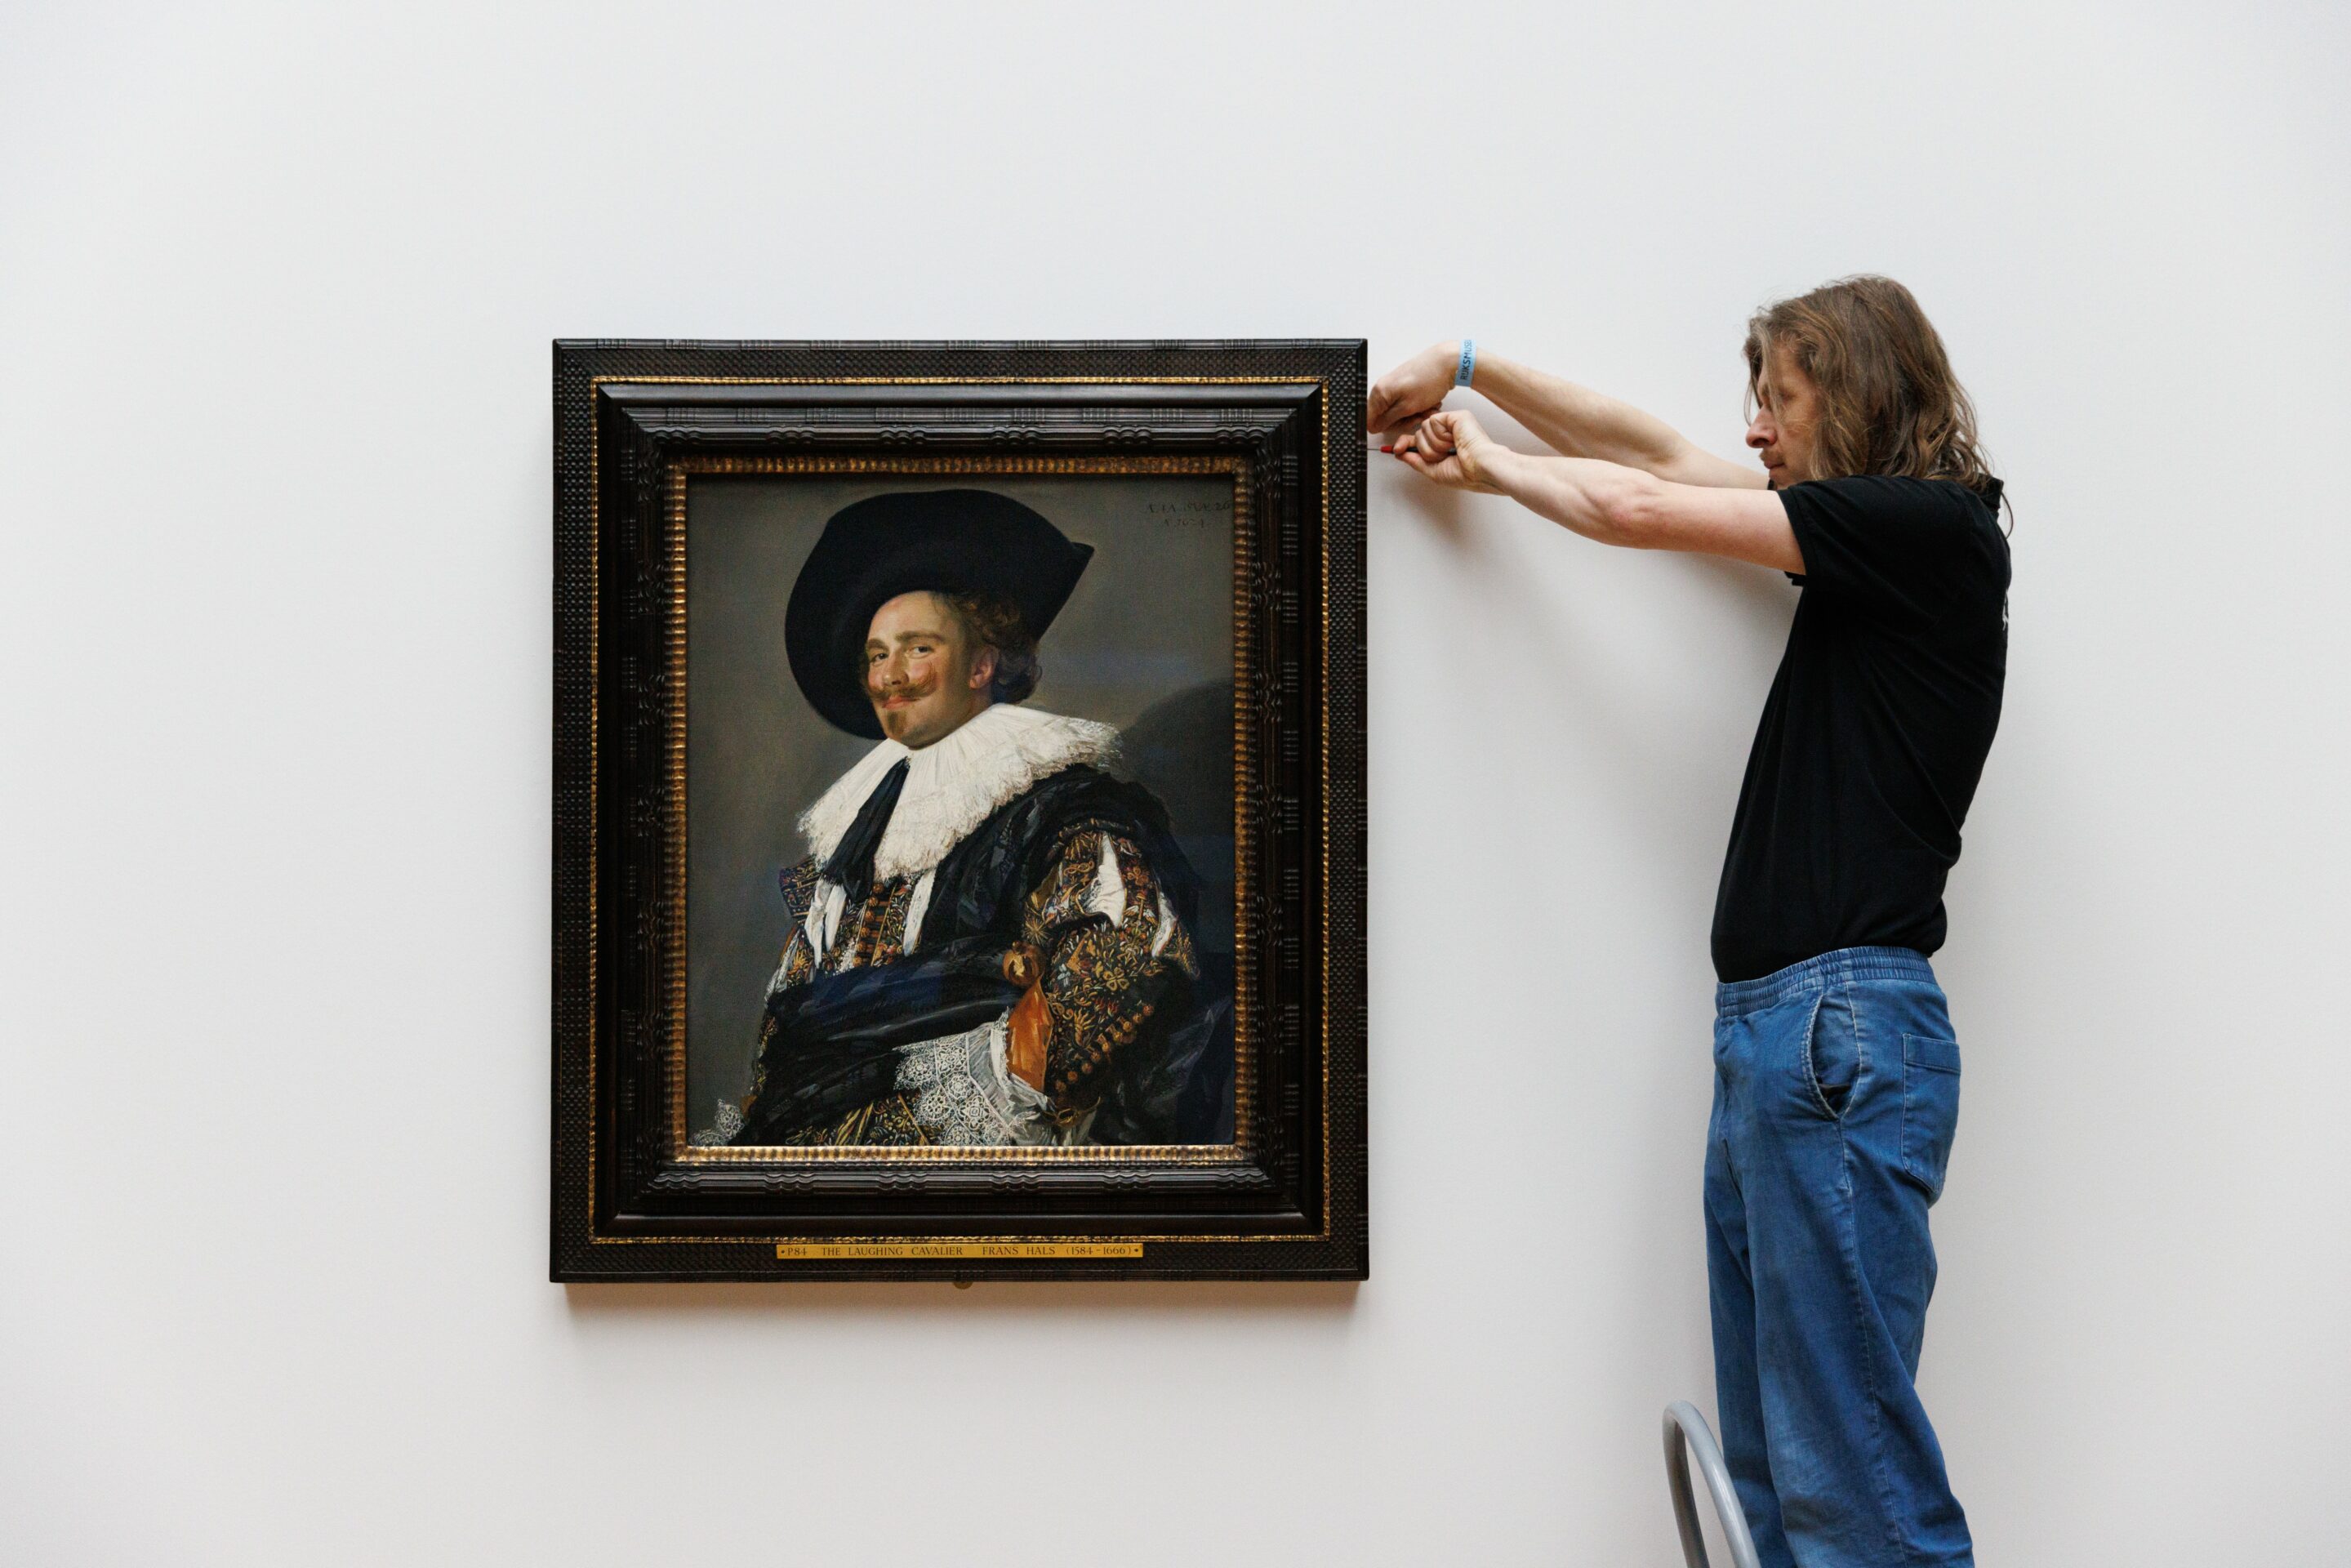 Frans Hals, the Flemish refugee who became a Dutch Master